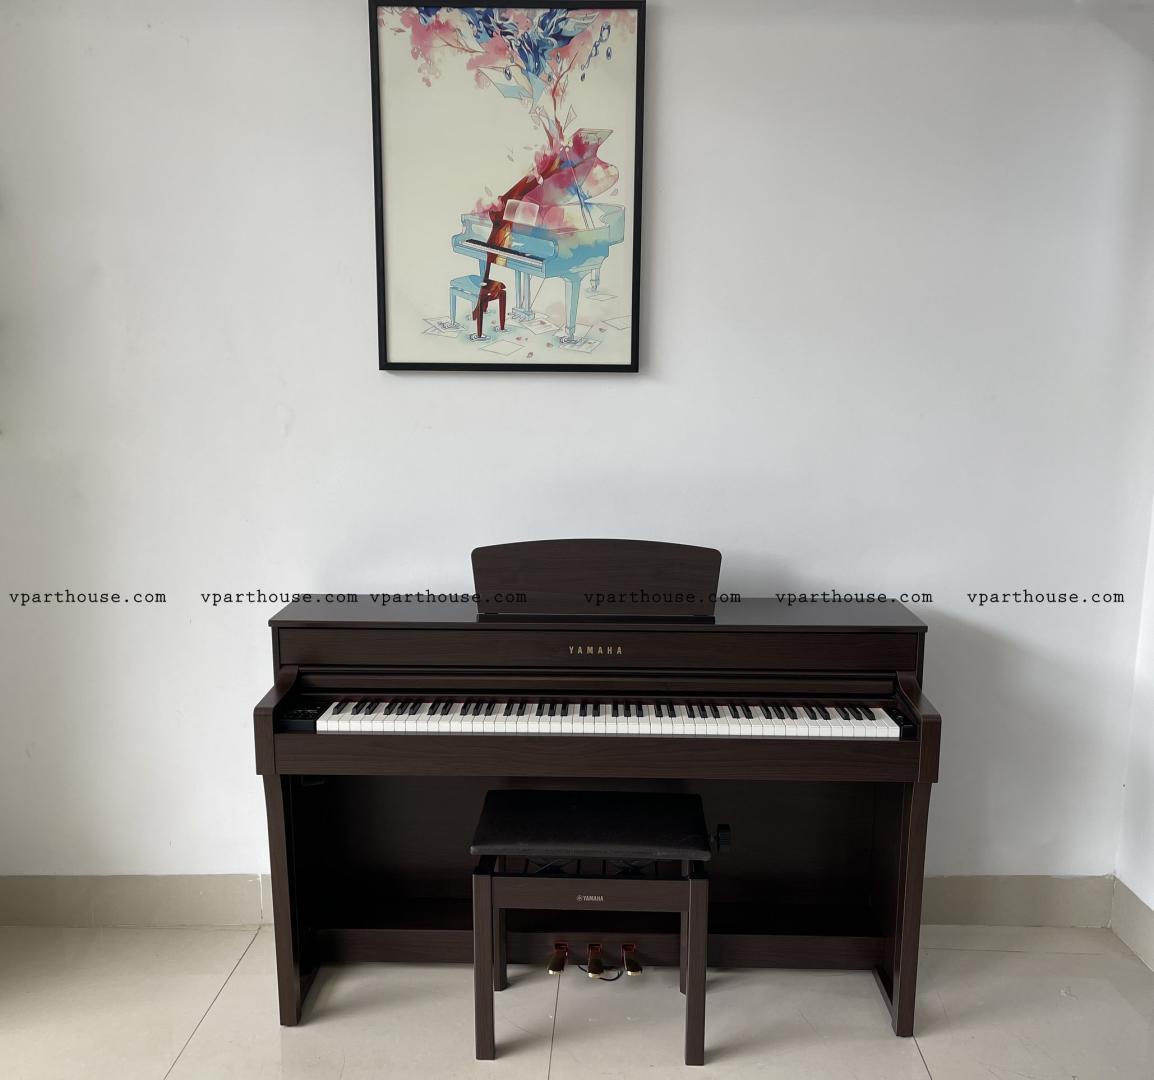 đàn piano điện Yamaha SCLP-6350 BN 